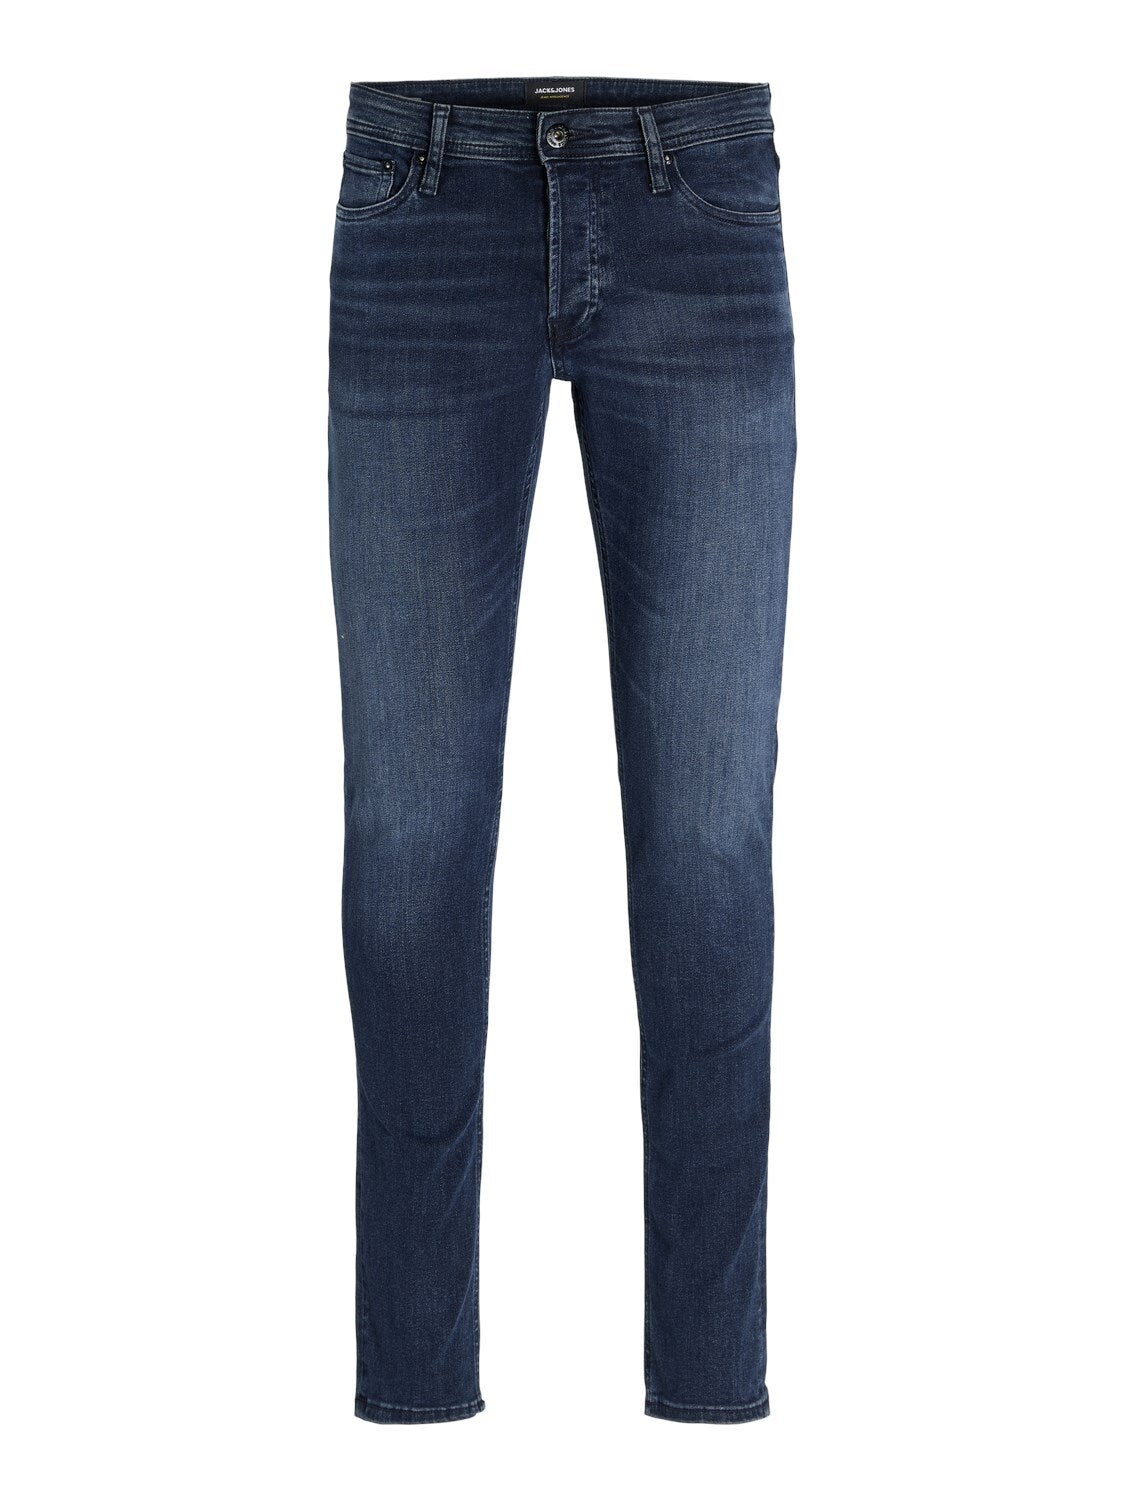 JACK & JONES Slim-Fit Jeans 'JJIGLENN JJORIGINAL AM 812 NOOS' Blue Denim, Unifarben, Blau - Gr. 31 x 32